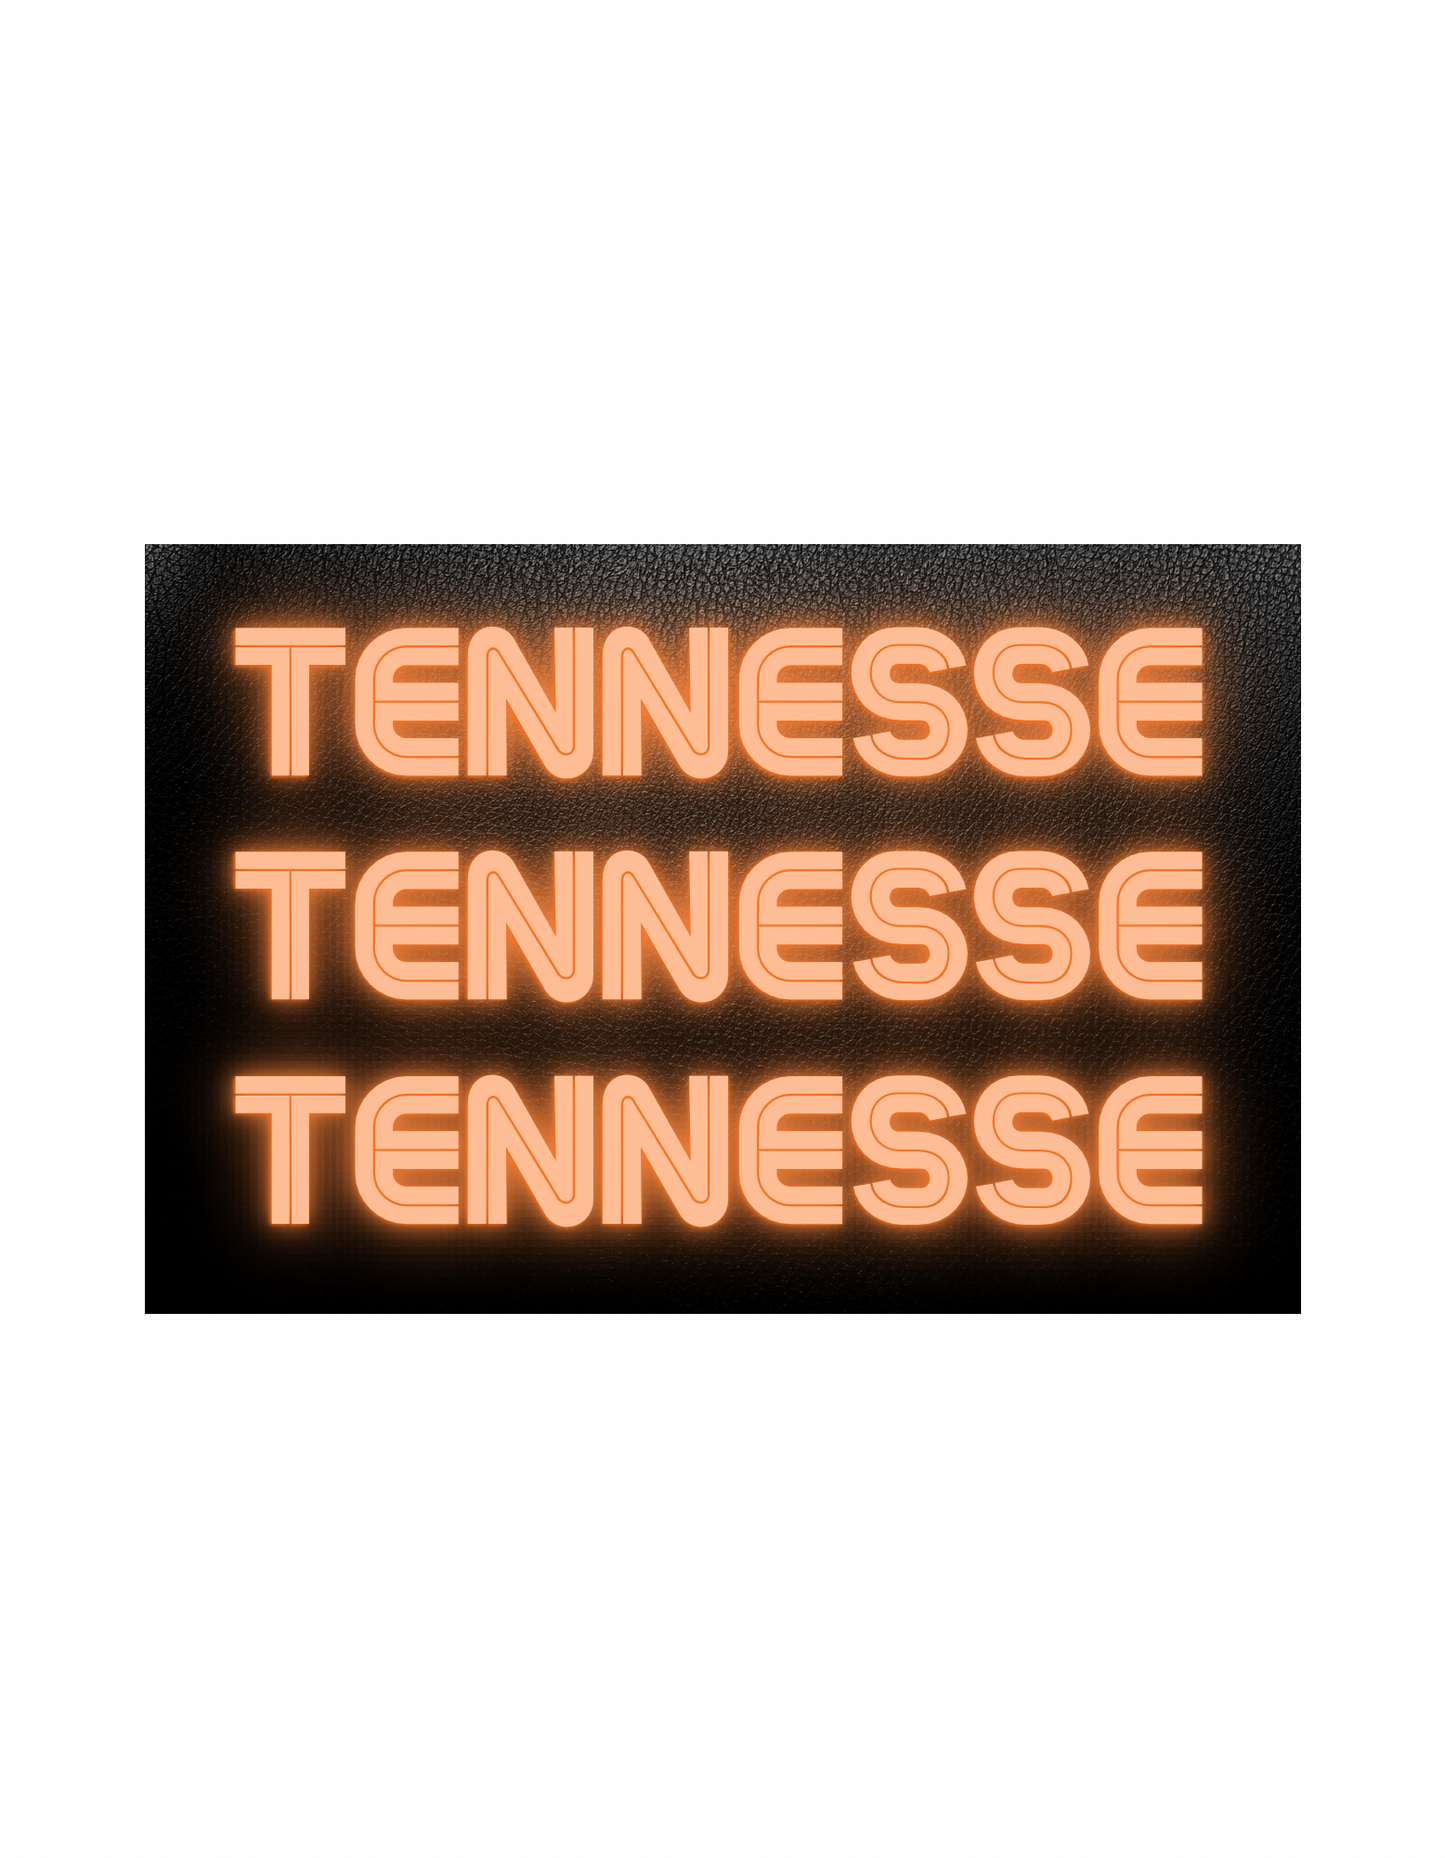 Tennessee Tee